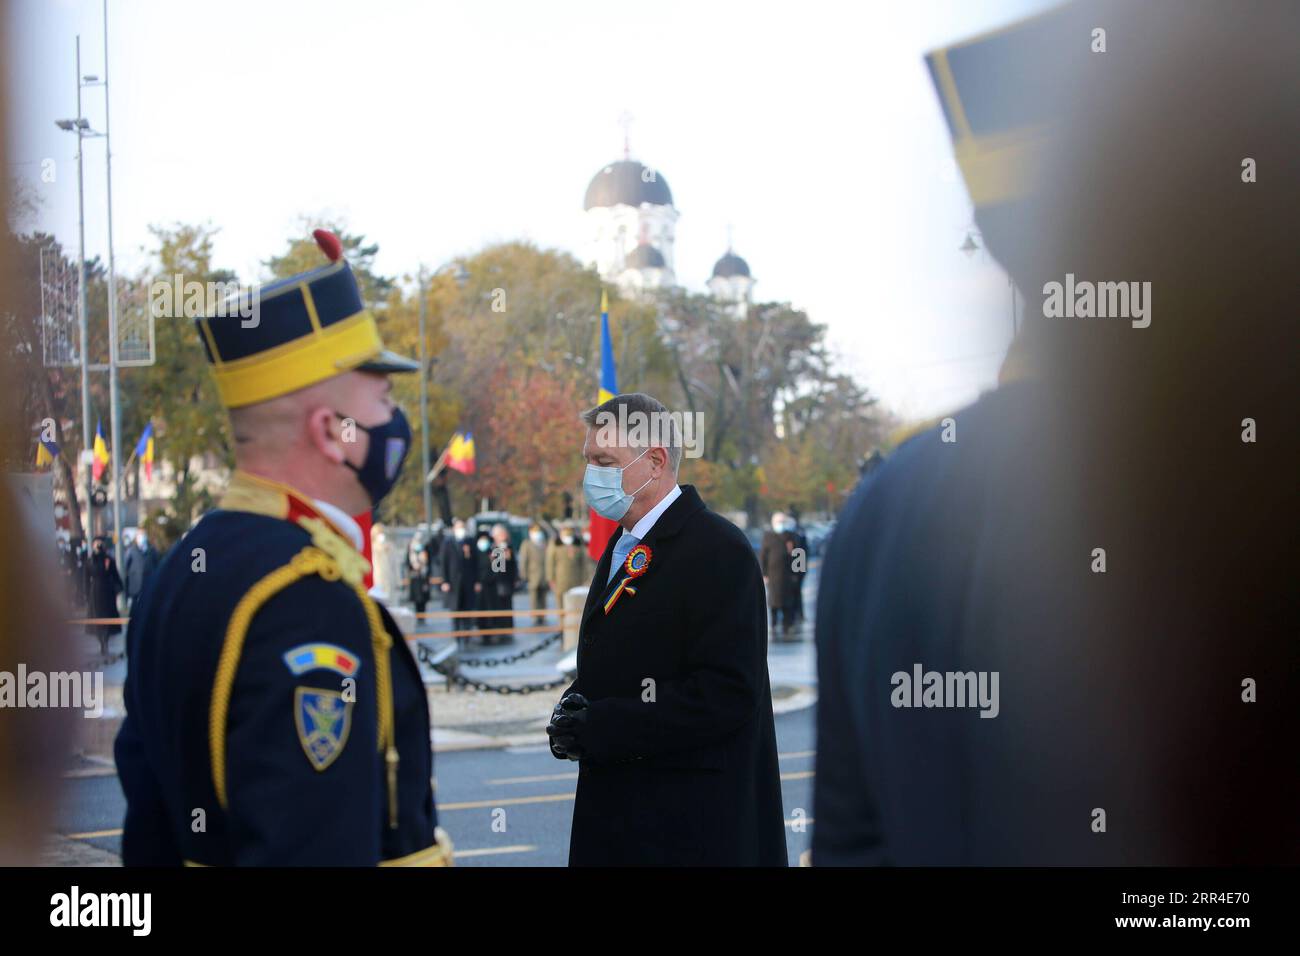 201201 -- BUKAREST, 1. Dezember 2020 -- der rumänische Präsident Klaus Iohannis nimmt am 1. Dezember 2020 an Rumäniens Nationalfeiertag in Bukarest, Rumänien, Teil. Rumänien hat in diesem Jahr eine vereinfachte Feierlichkeit zum Nationalfeiertag abgehalten, während der schweren Pandemie, ohne die großangelegte Militärparade und die Flugvorführungen der vergangenen Jahre. Foto von /Xinhua RUMÄNIEN-BUKAREST-NATIONALFEIERTAG GabrielxPetrescu PUBLICATIONxNOTxINxCHN Stockfoto